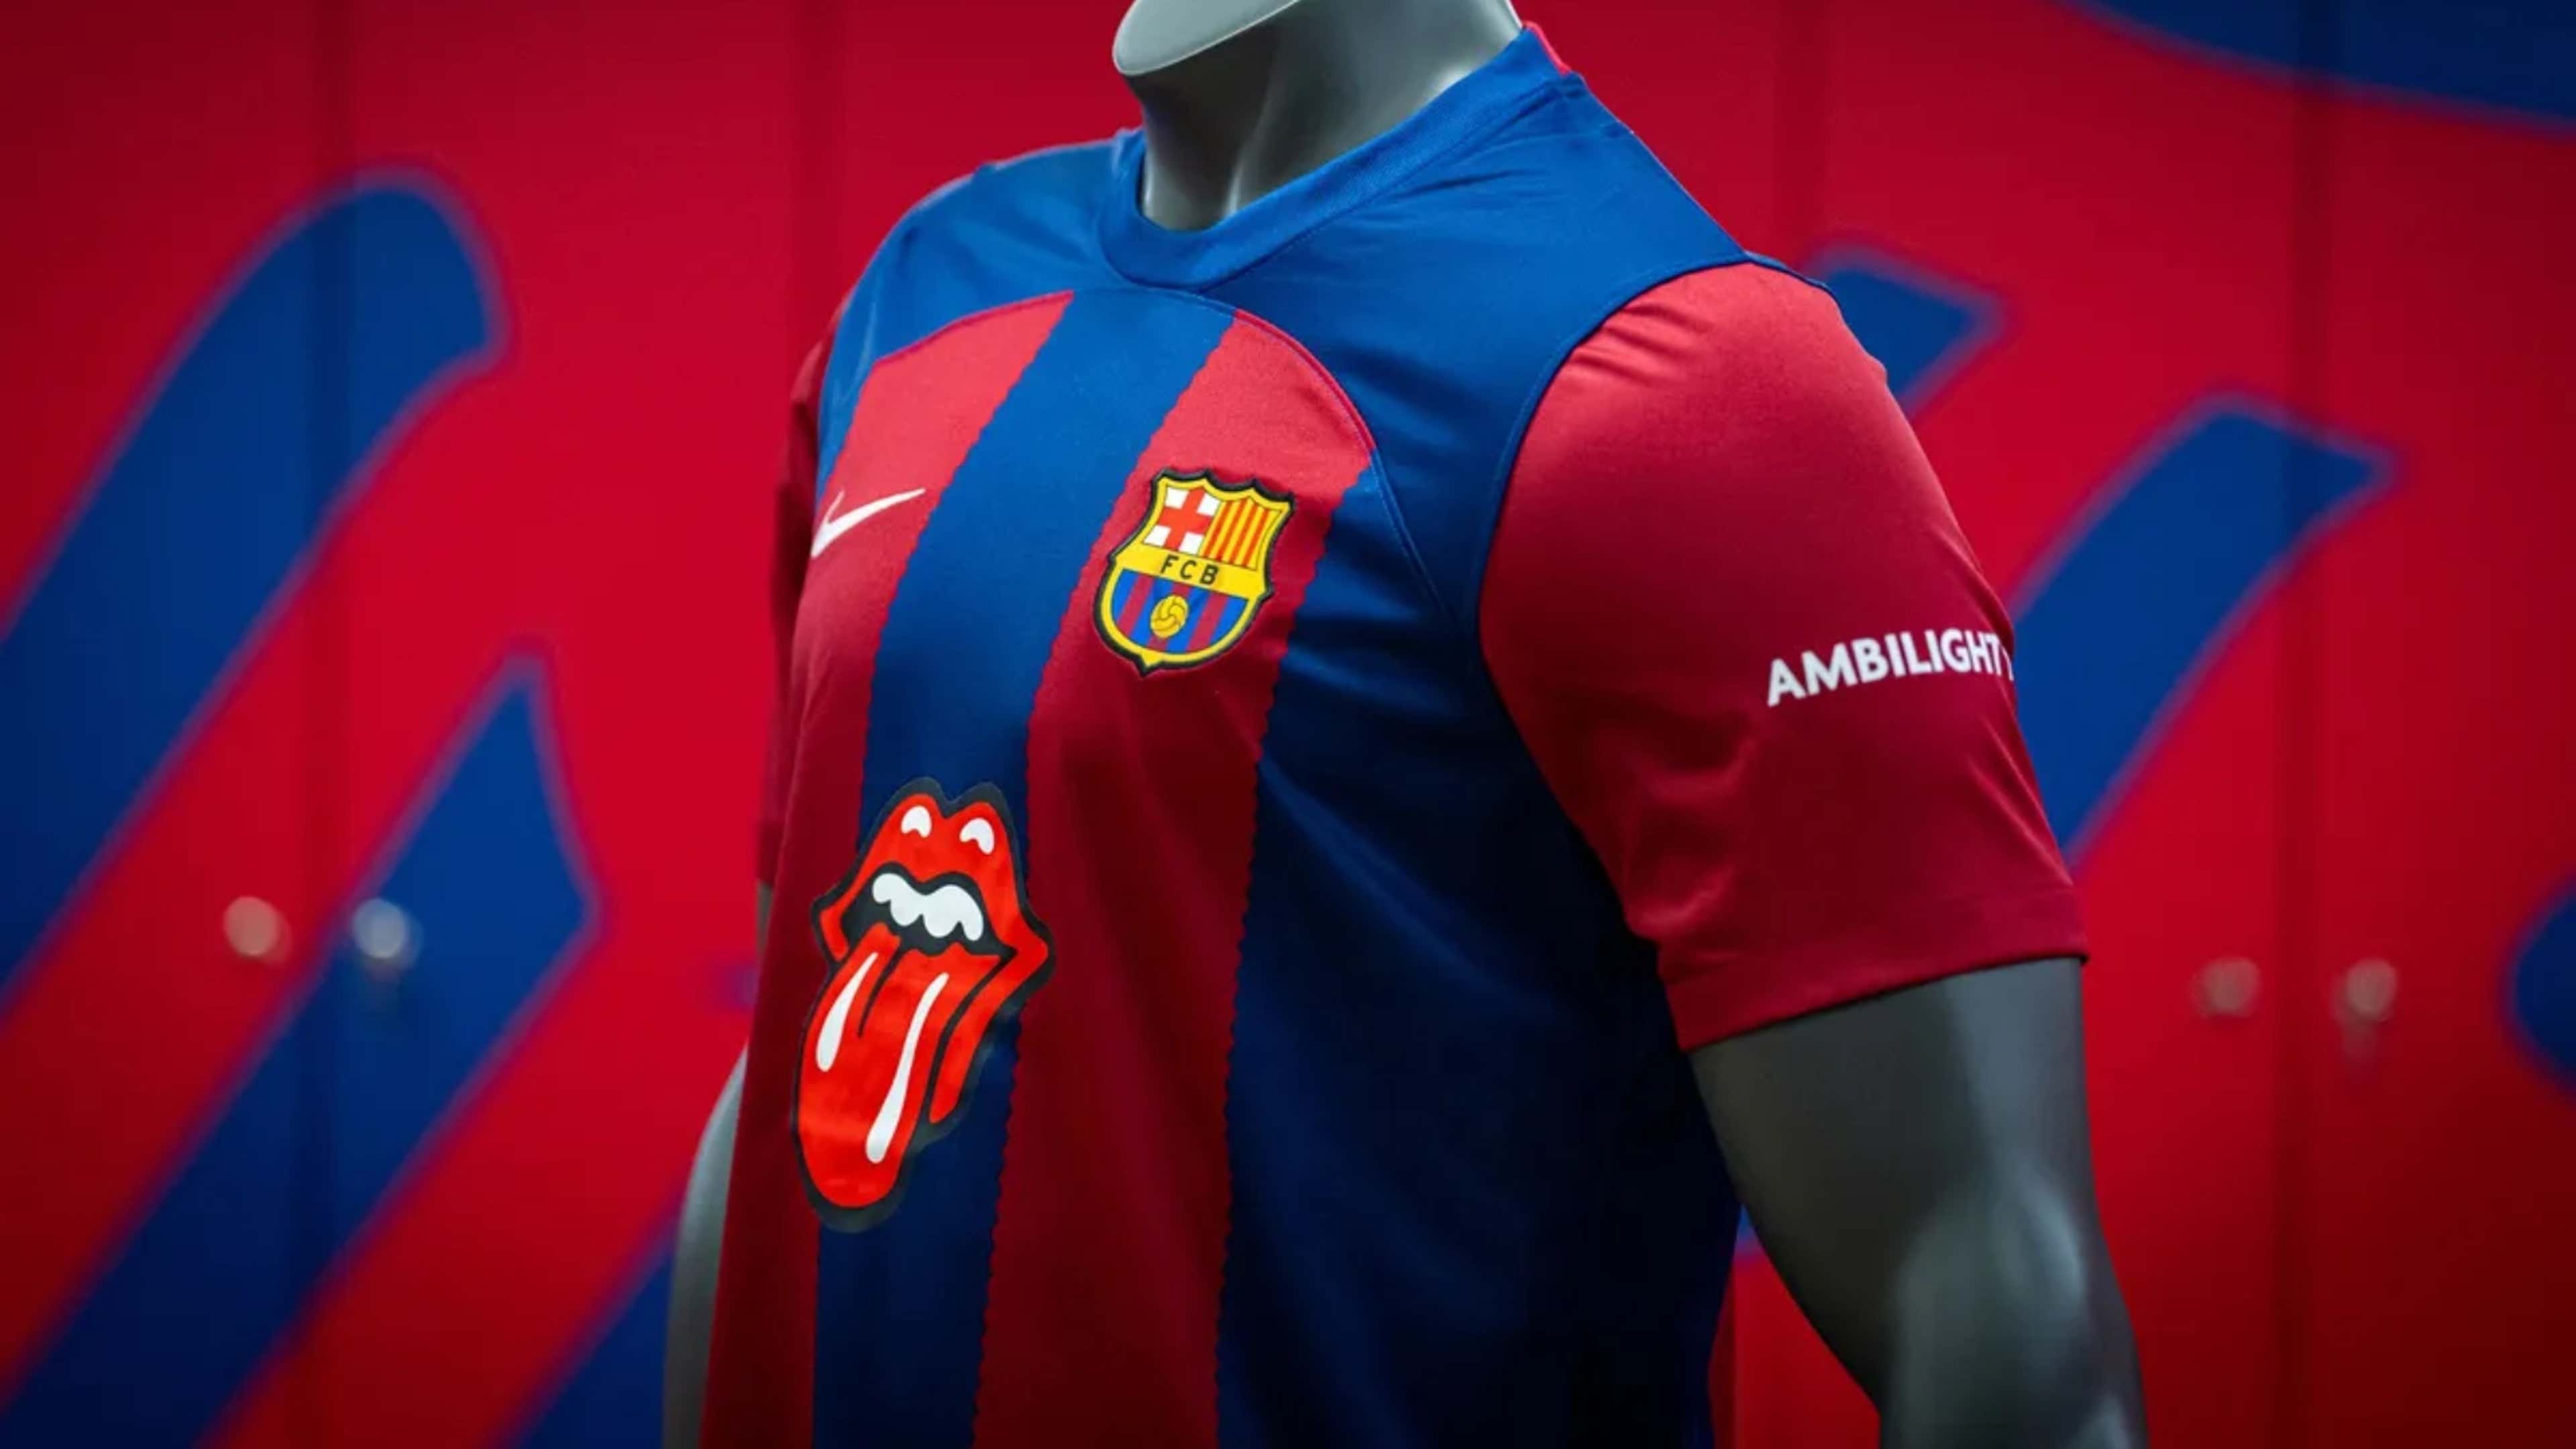 Así será la camiseta del Barça con la que jugará los grandes partidos